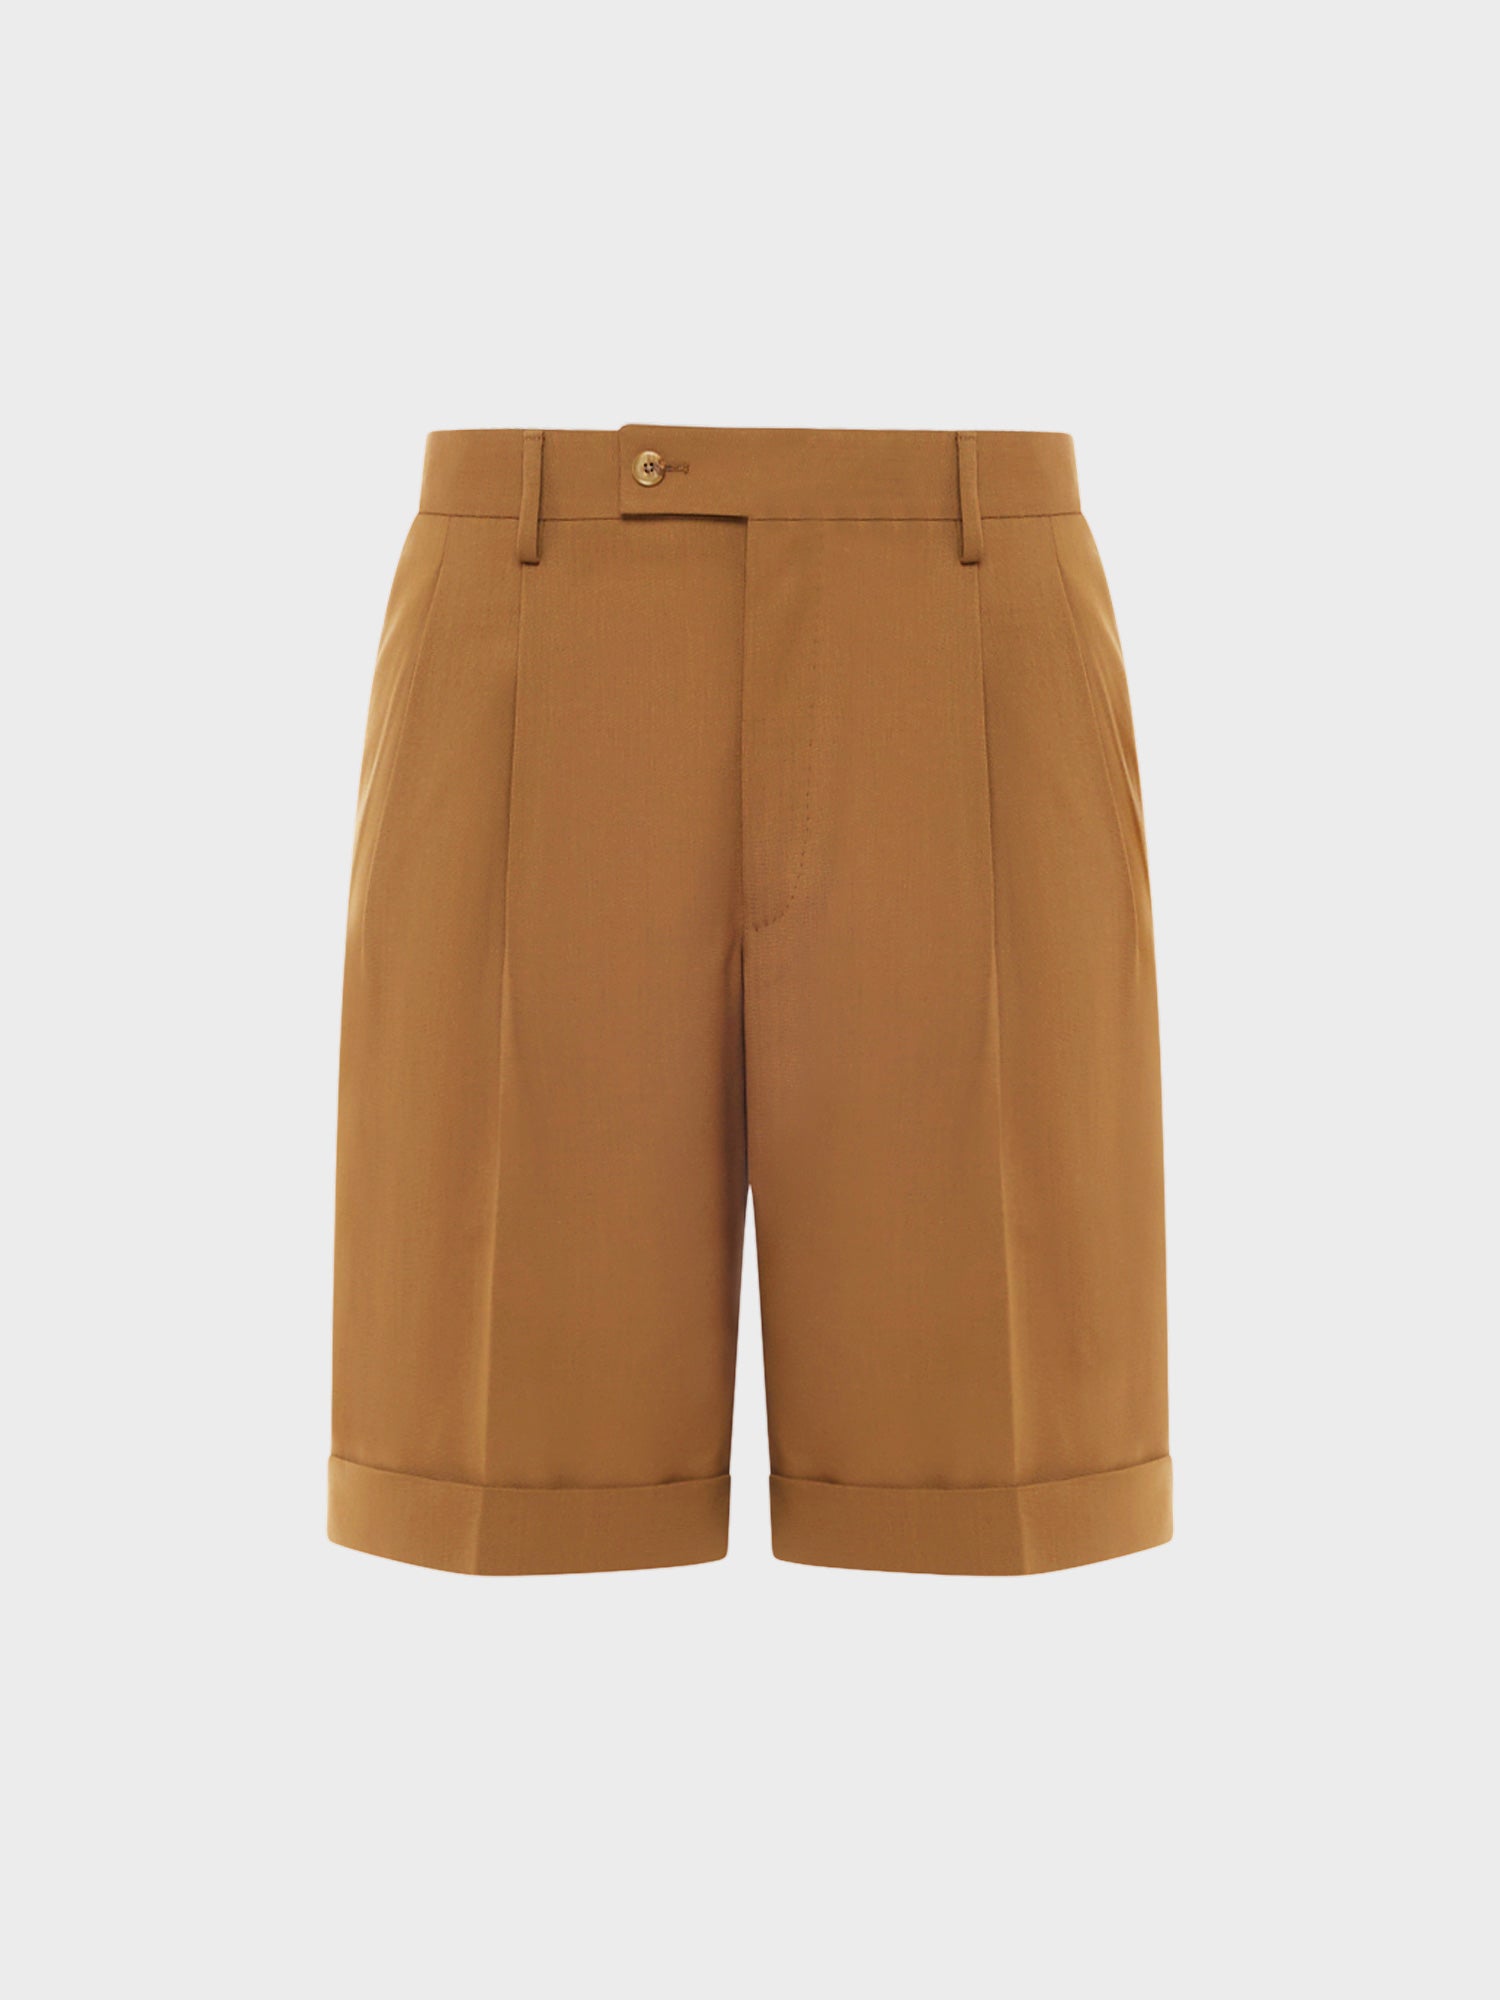 Caruso Menswear Abbigliamento Pantaloni Uomo Bermuda in tropical di lana marrone beige Houdini still